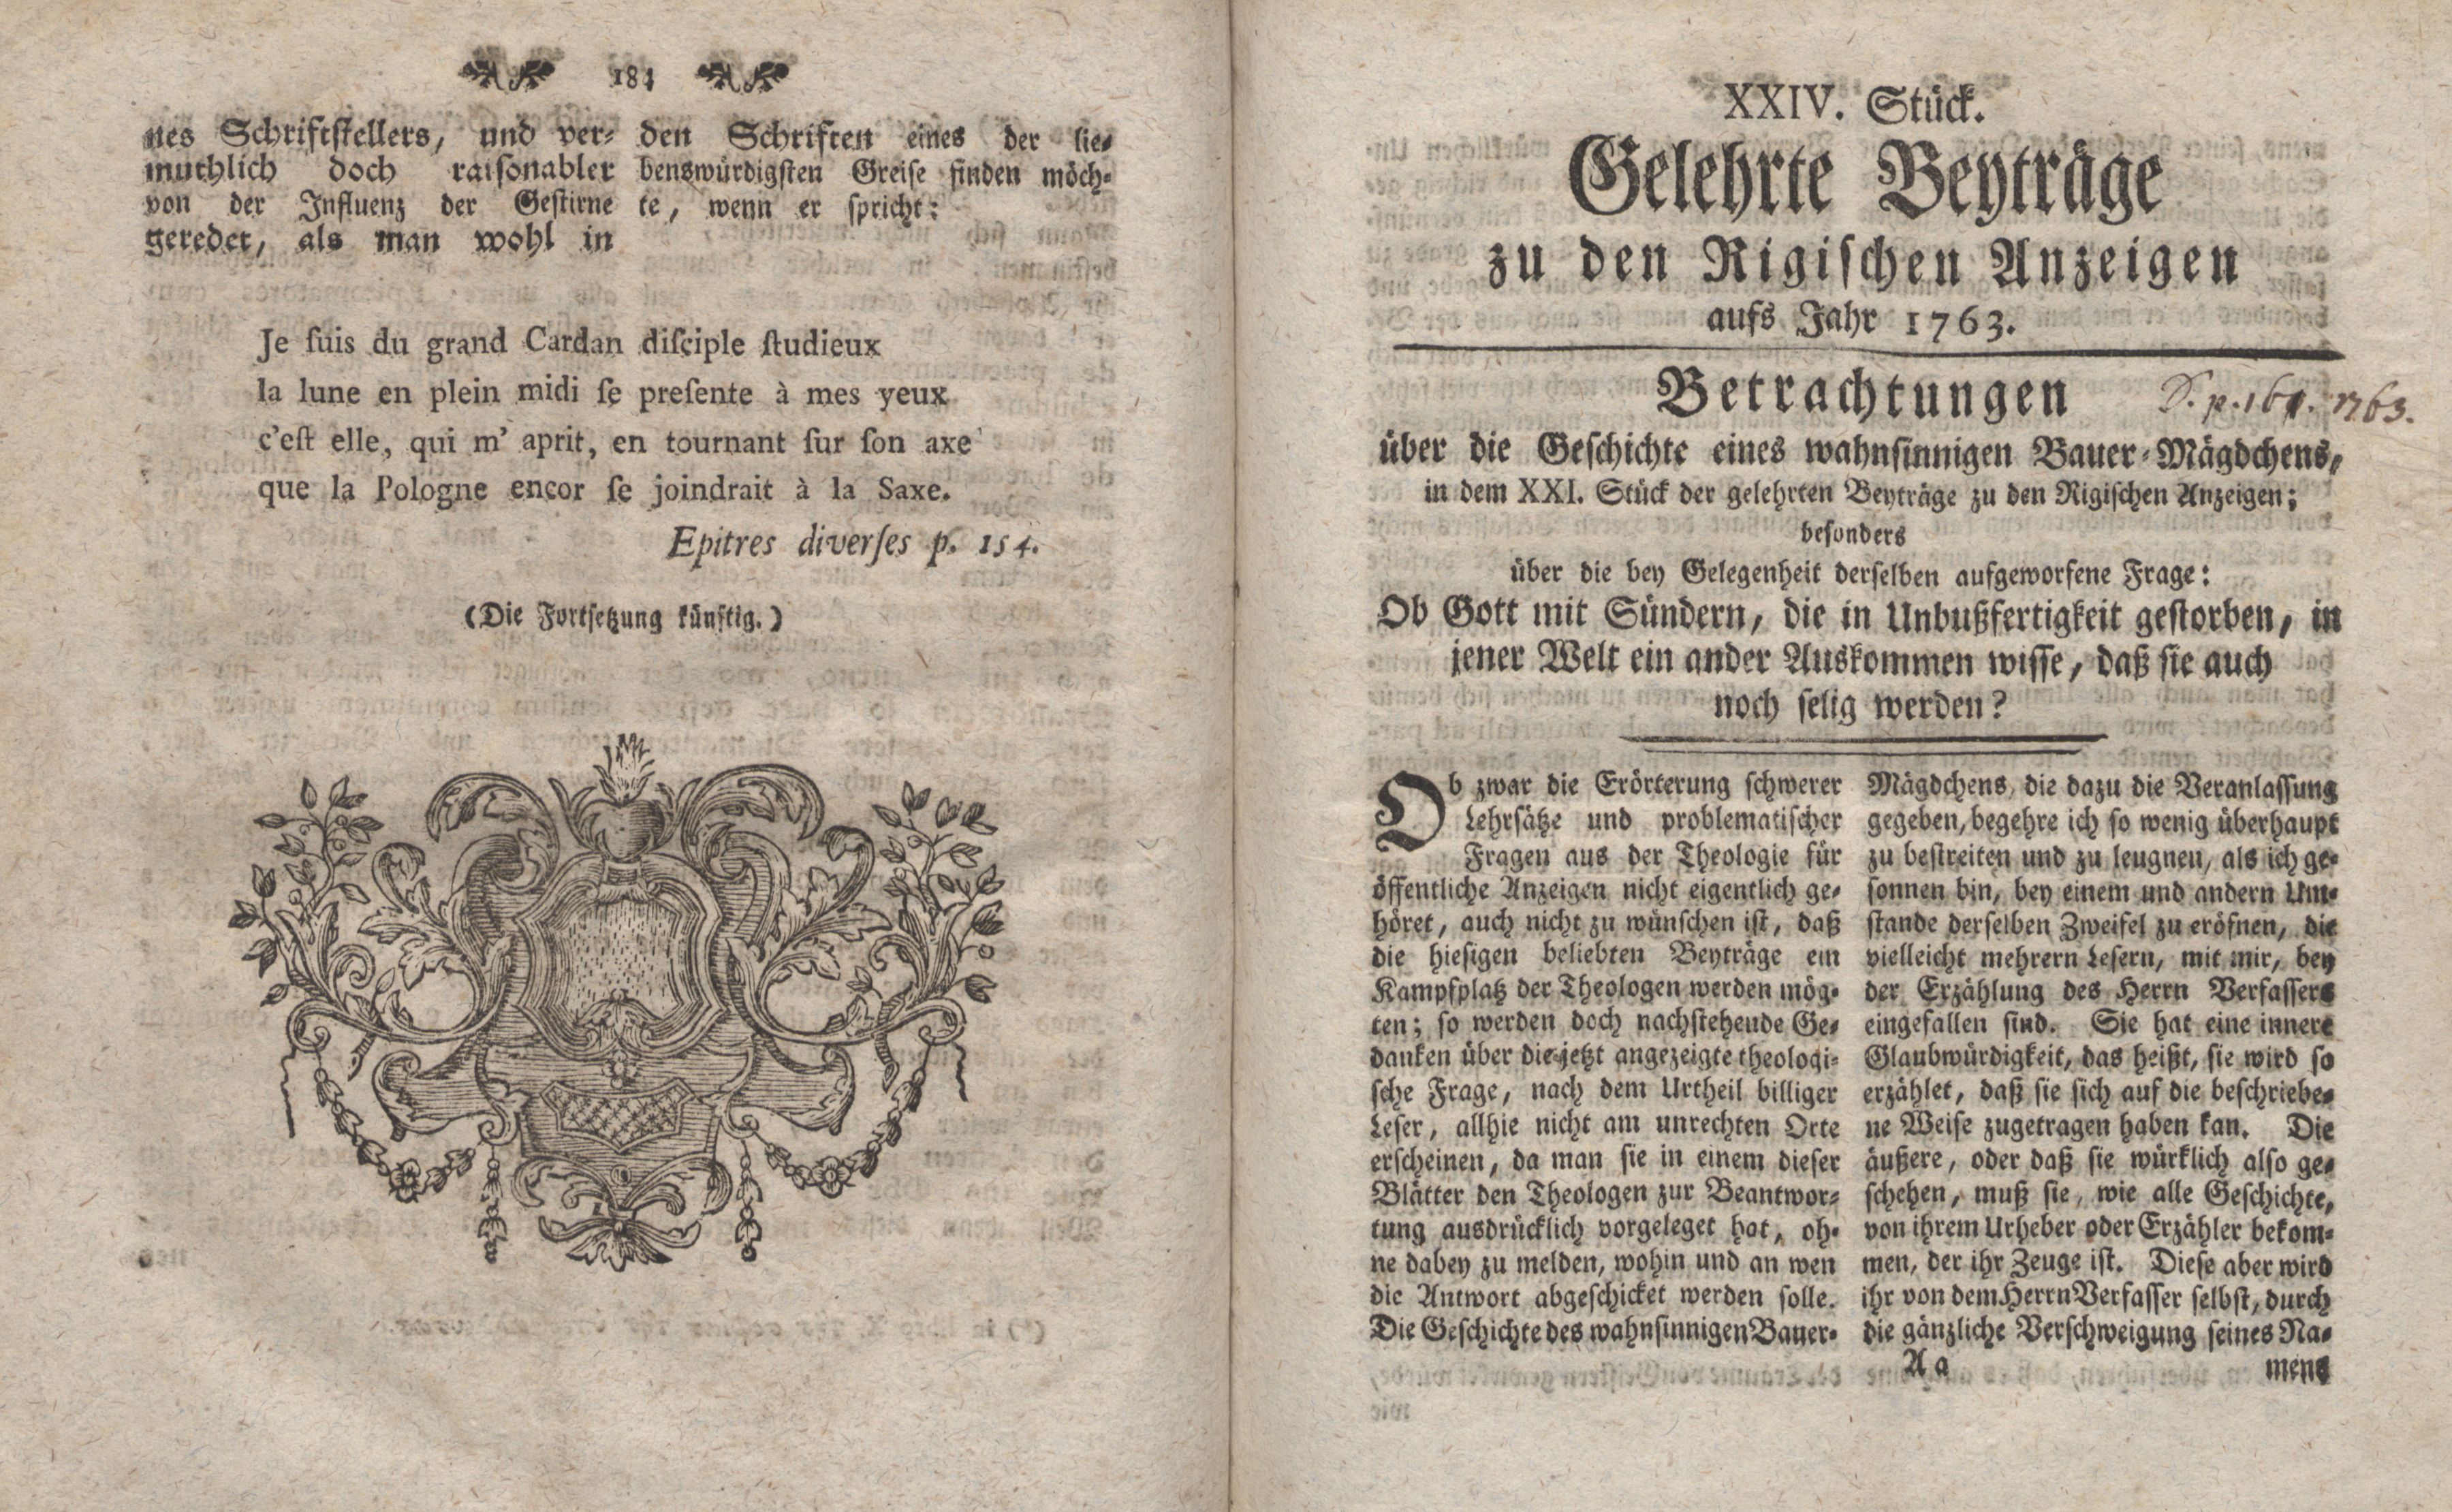 Betrachtungen über die Geschichte eines wahnsinnigen Bauer-Mägdchens [1] (1763) | 1. (184-185) Main body of text